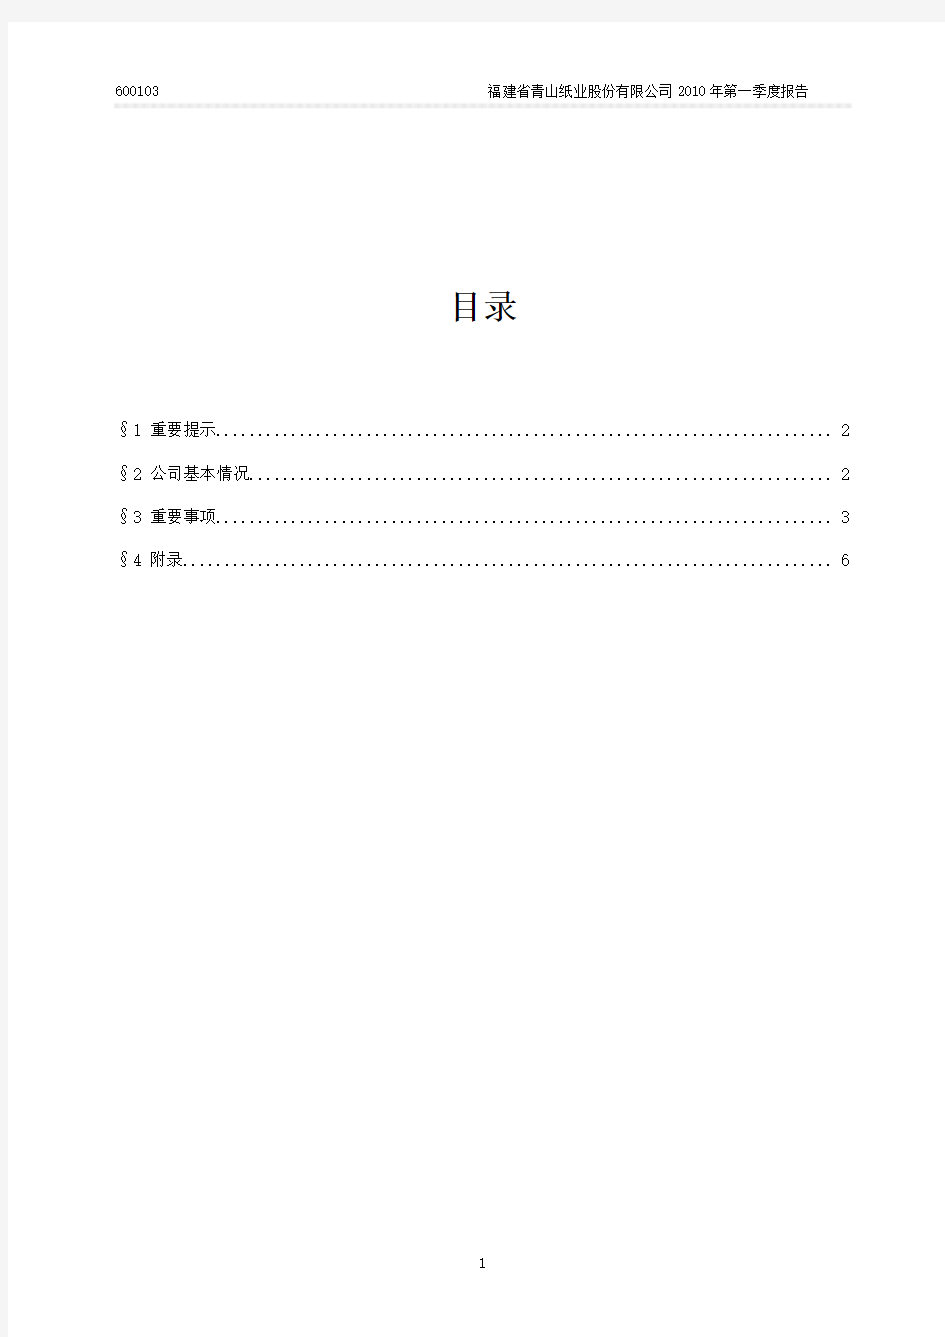 福建省青山纸业股份有限公司2010年第一季度报告